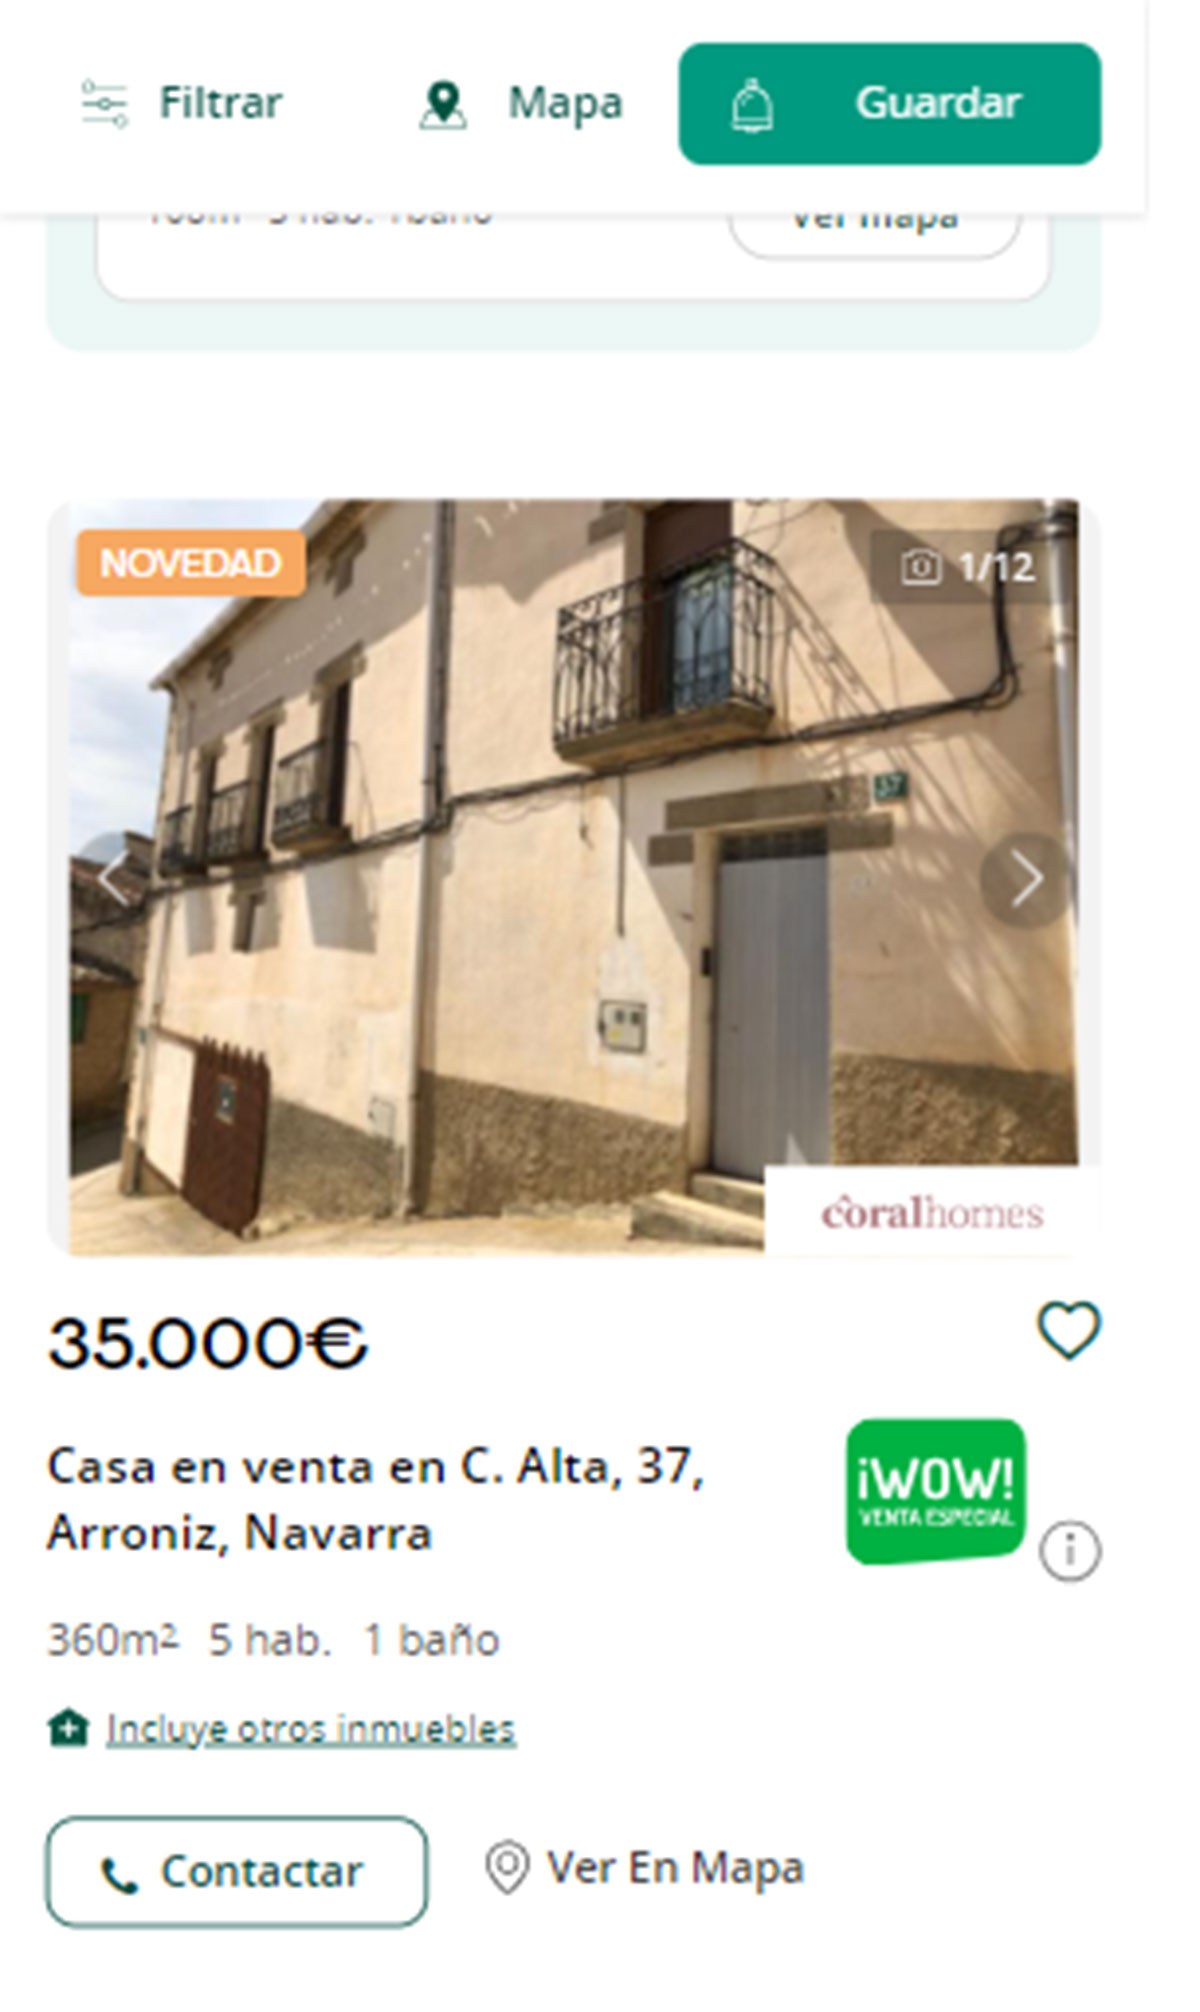 Piso en Navarra por 35.000 euros